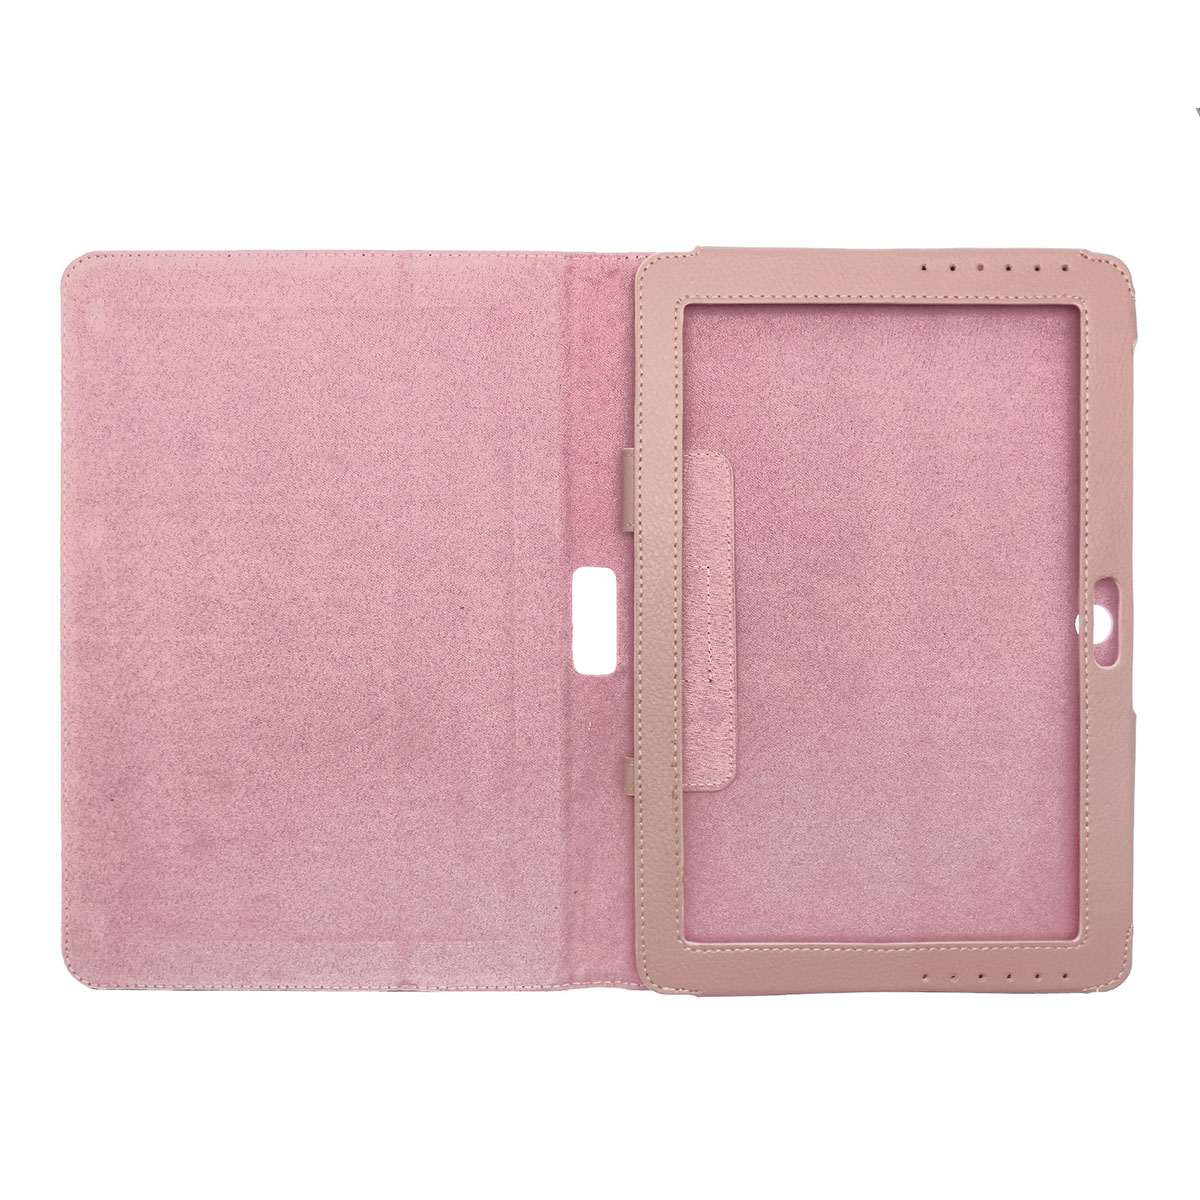 Чехол книжка для SAMSUNG Galaxy Tab 2 10.1 (P5100, P5110), экокожа, цвет розовый.